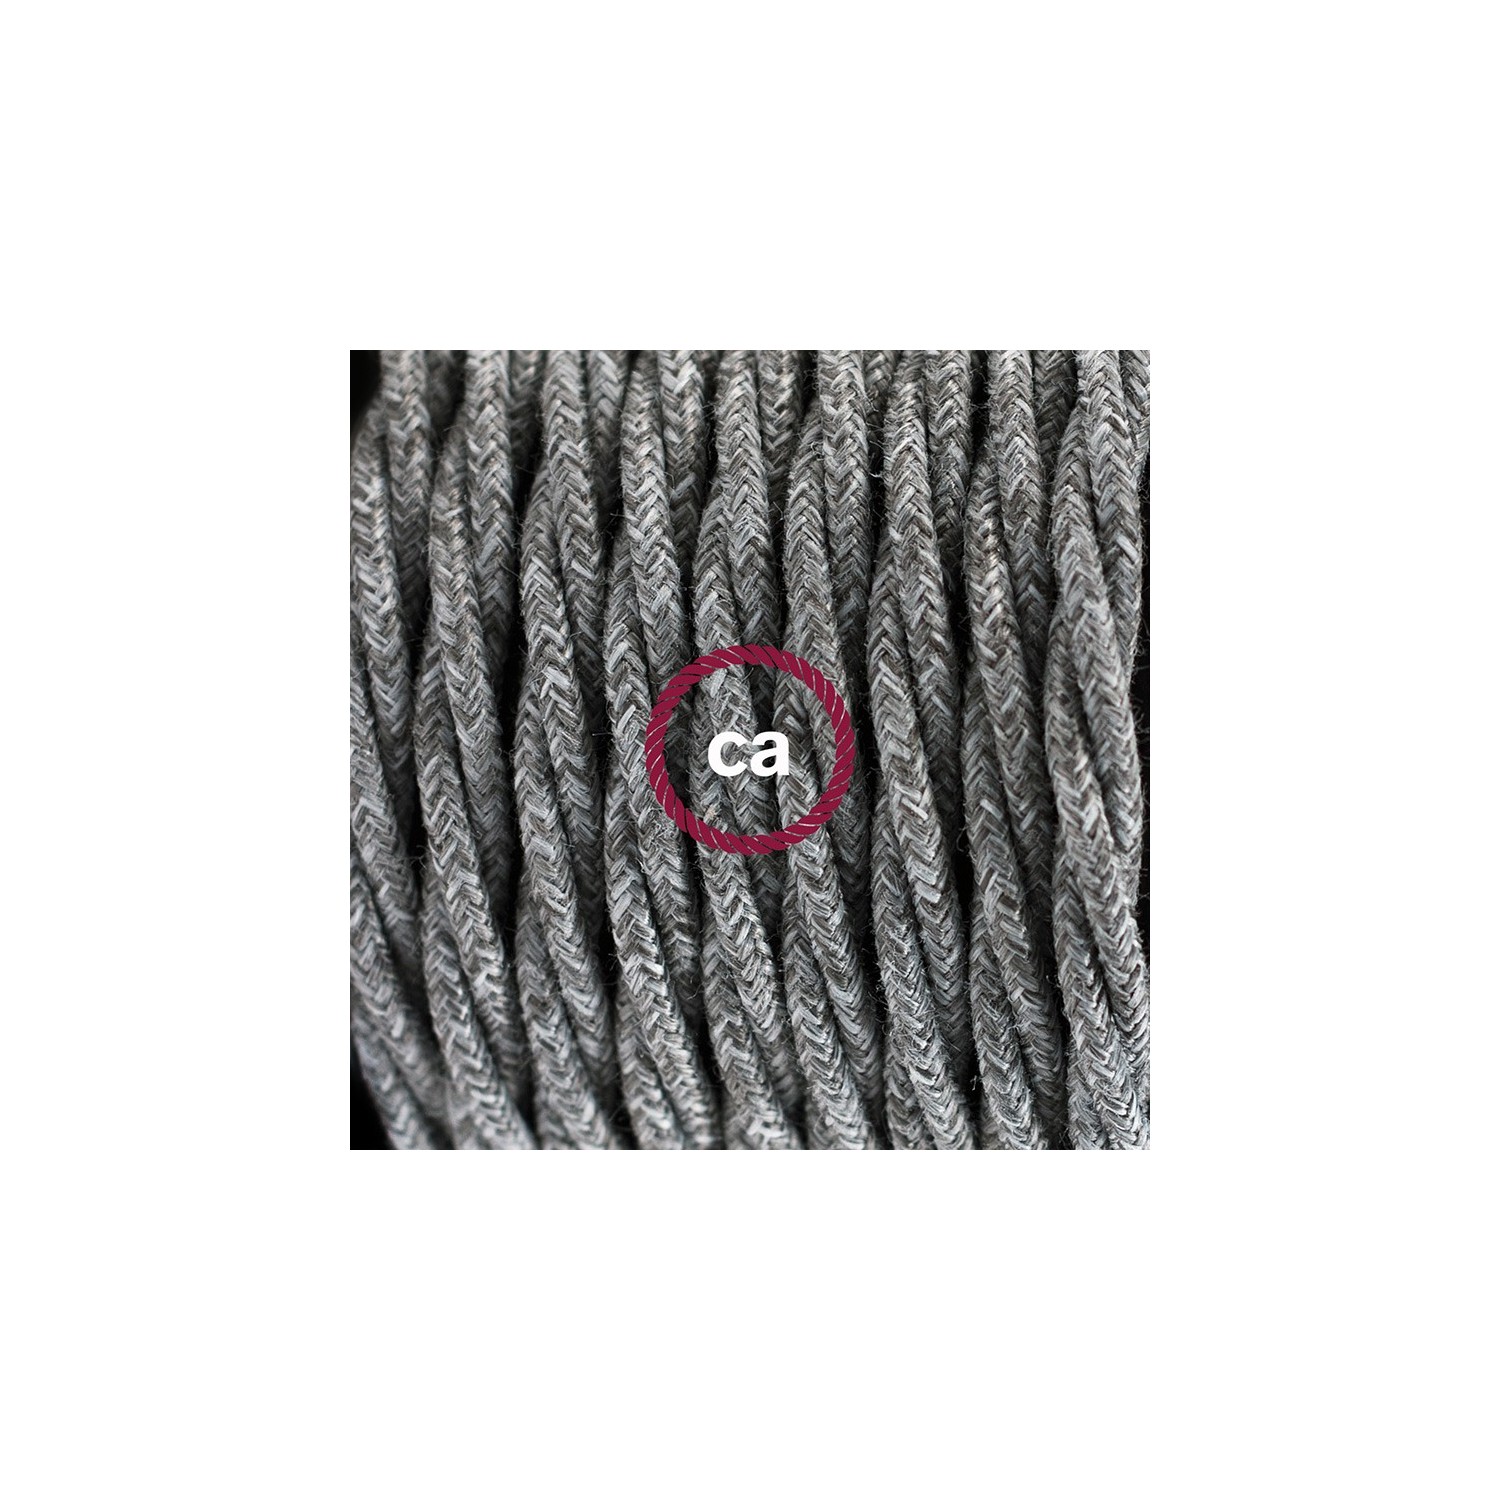 SnakeBis bedradingsset met fitting en strijkijzersnoer - grijs natuurlijk linnen TN02